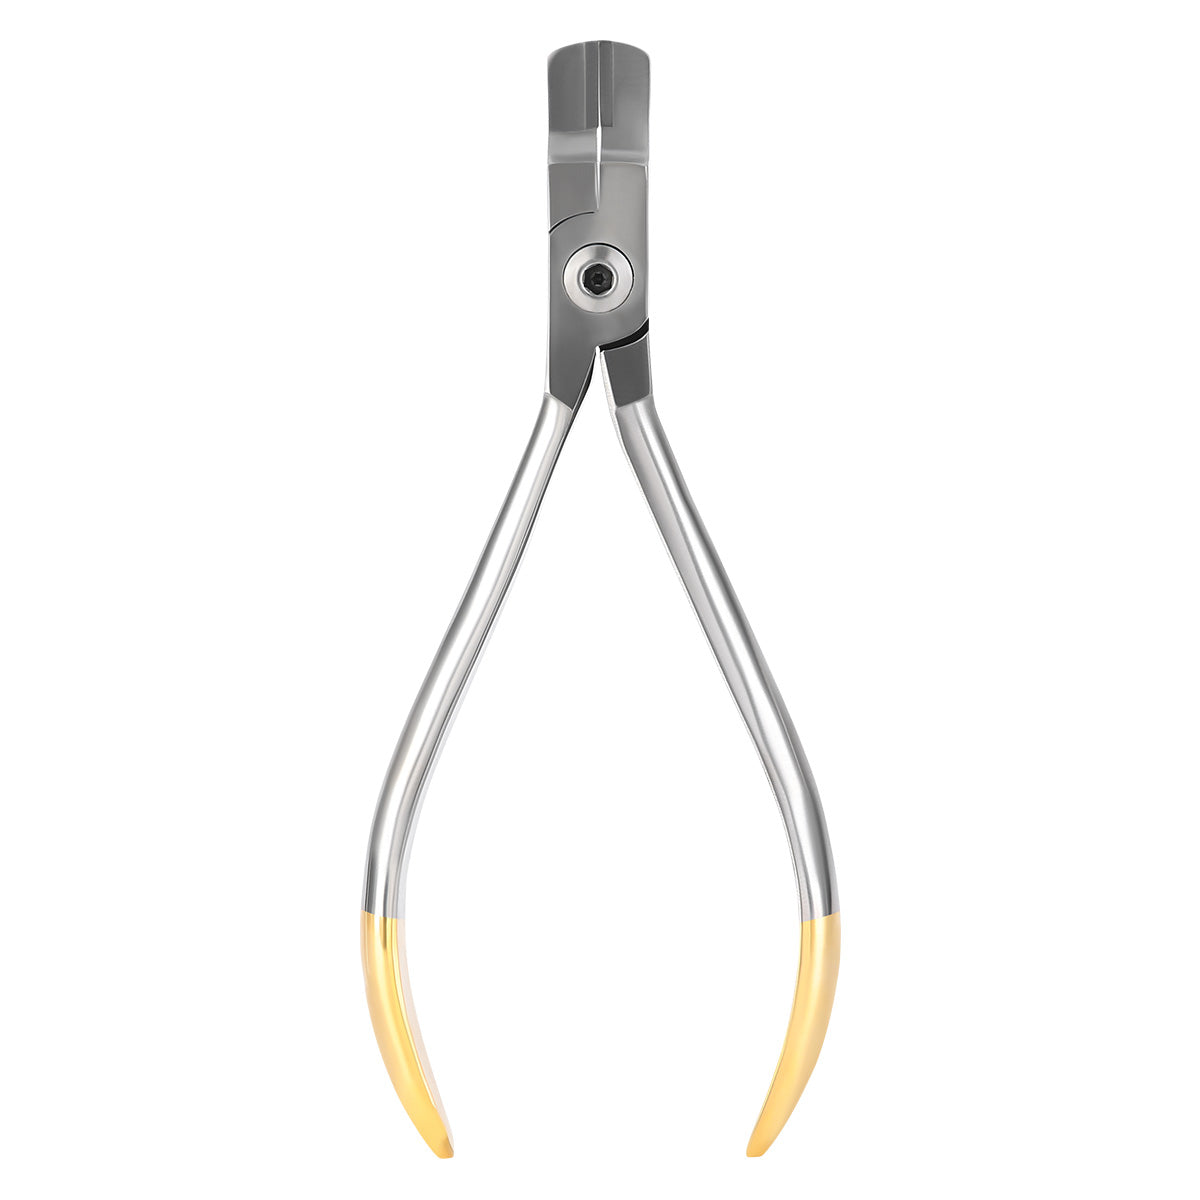 Orthodontic Instruments Torque Bending Plier - pairaydental.com